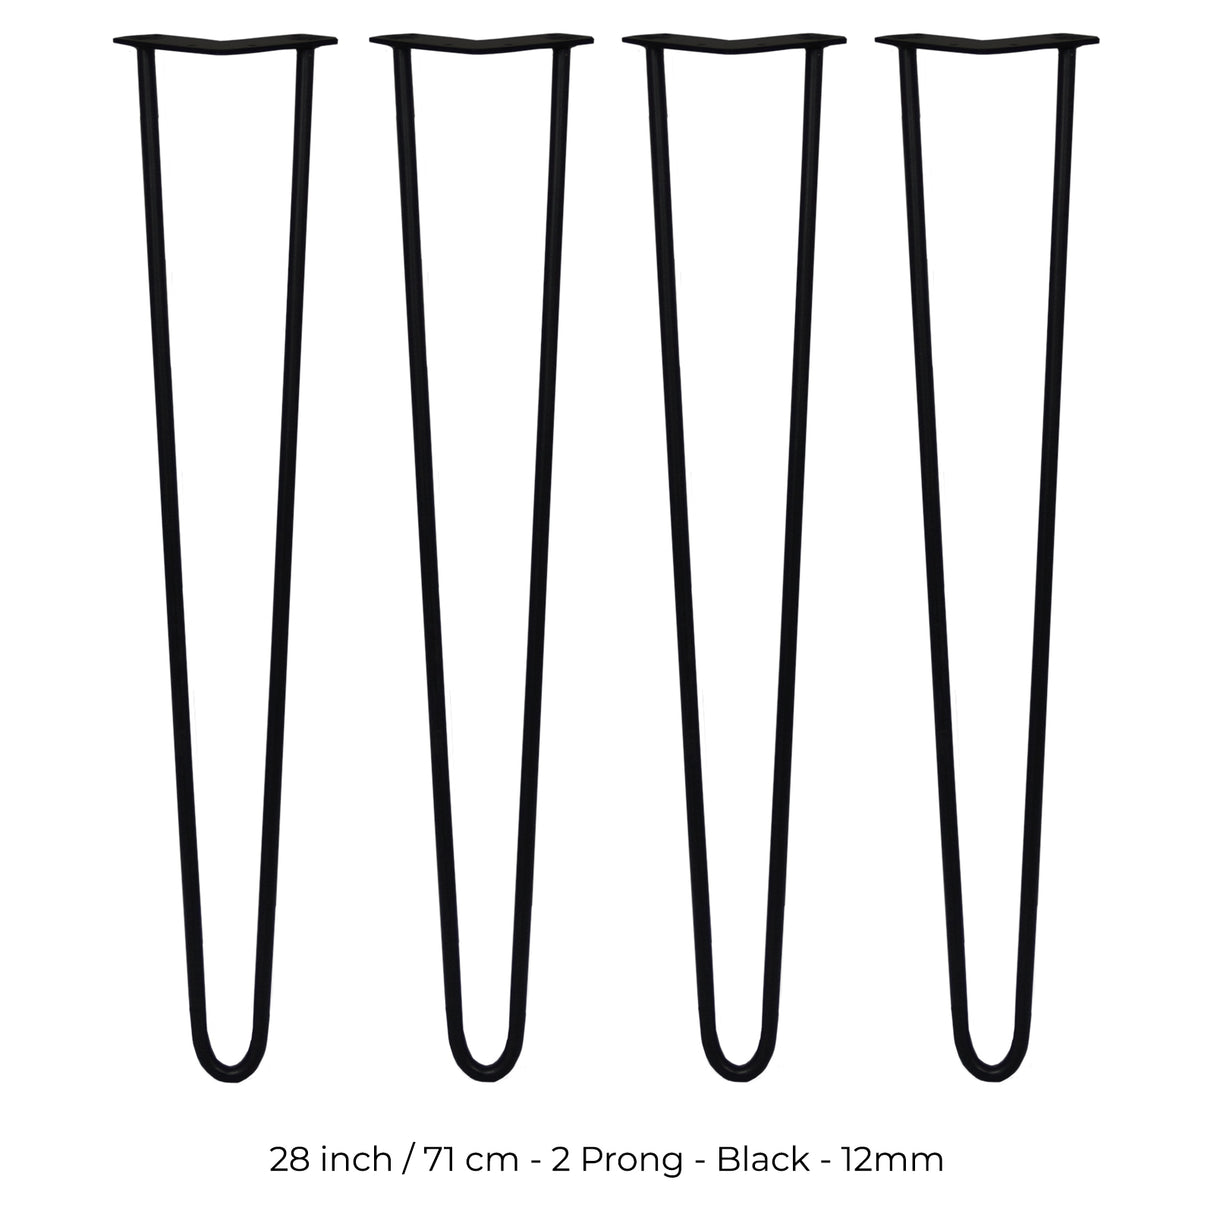 4 Patas de Horquilla SkiSki Legs 71cm Acero Negro 2 Dientes 12mm